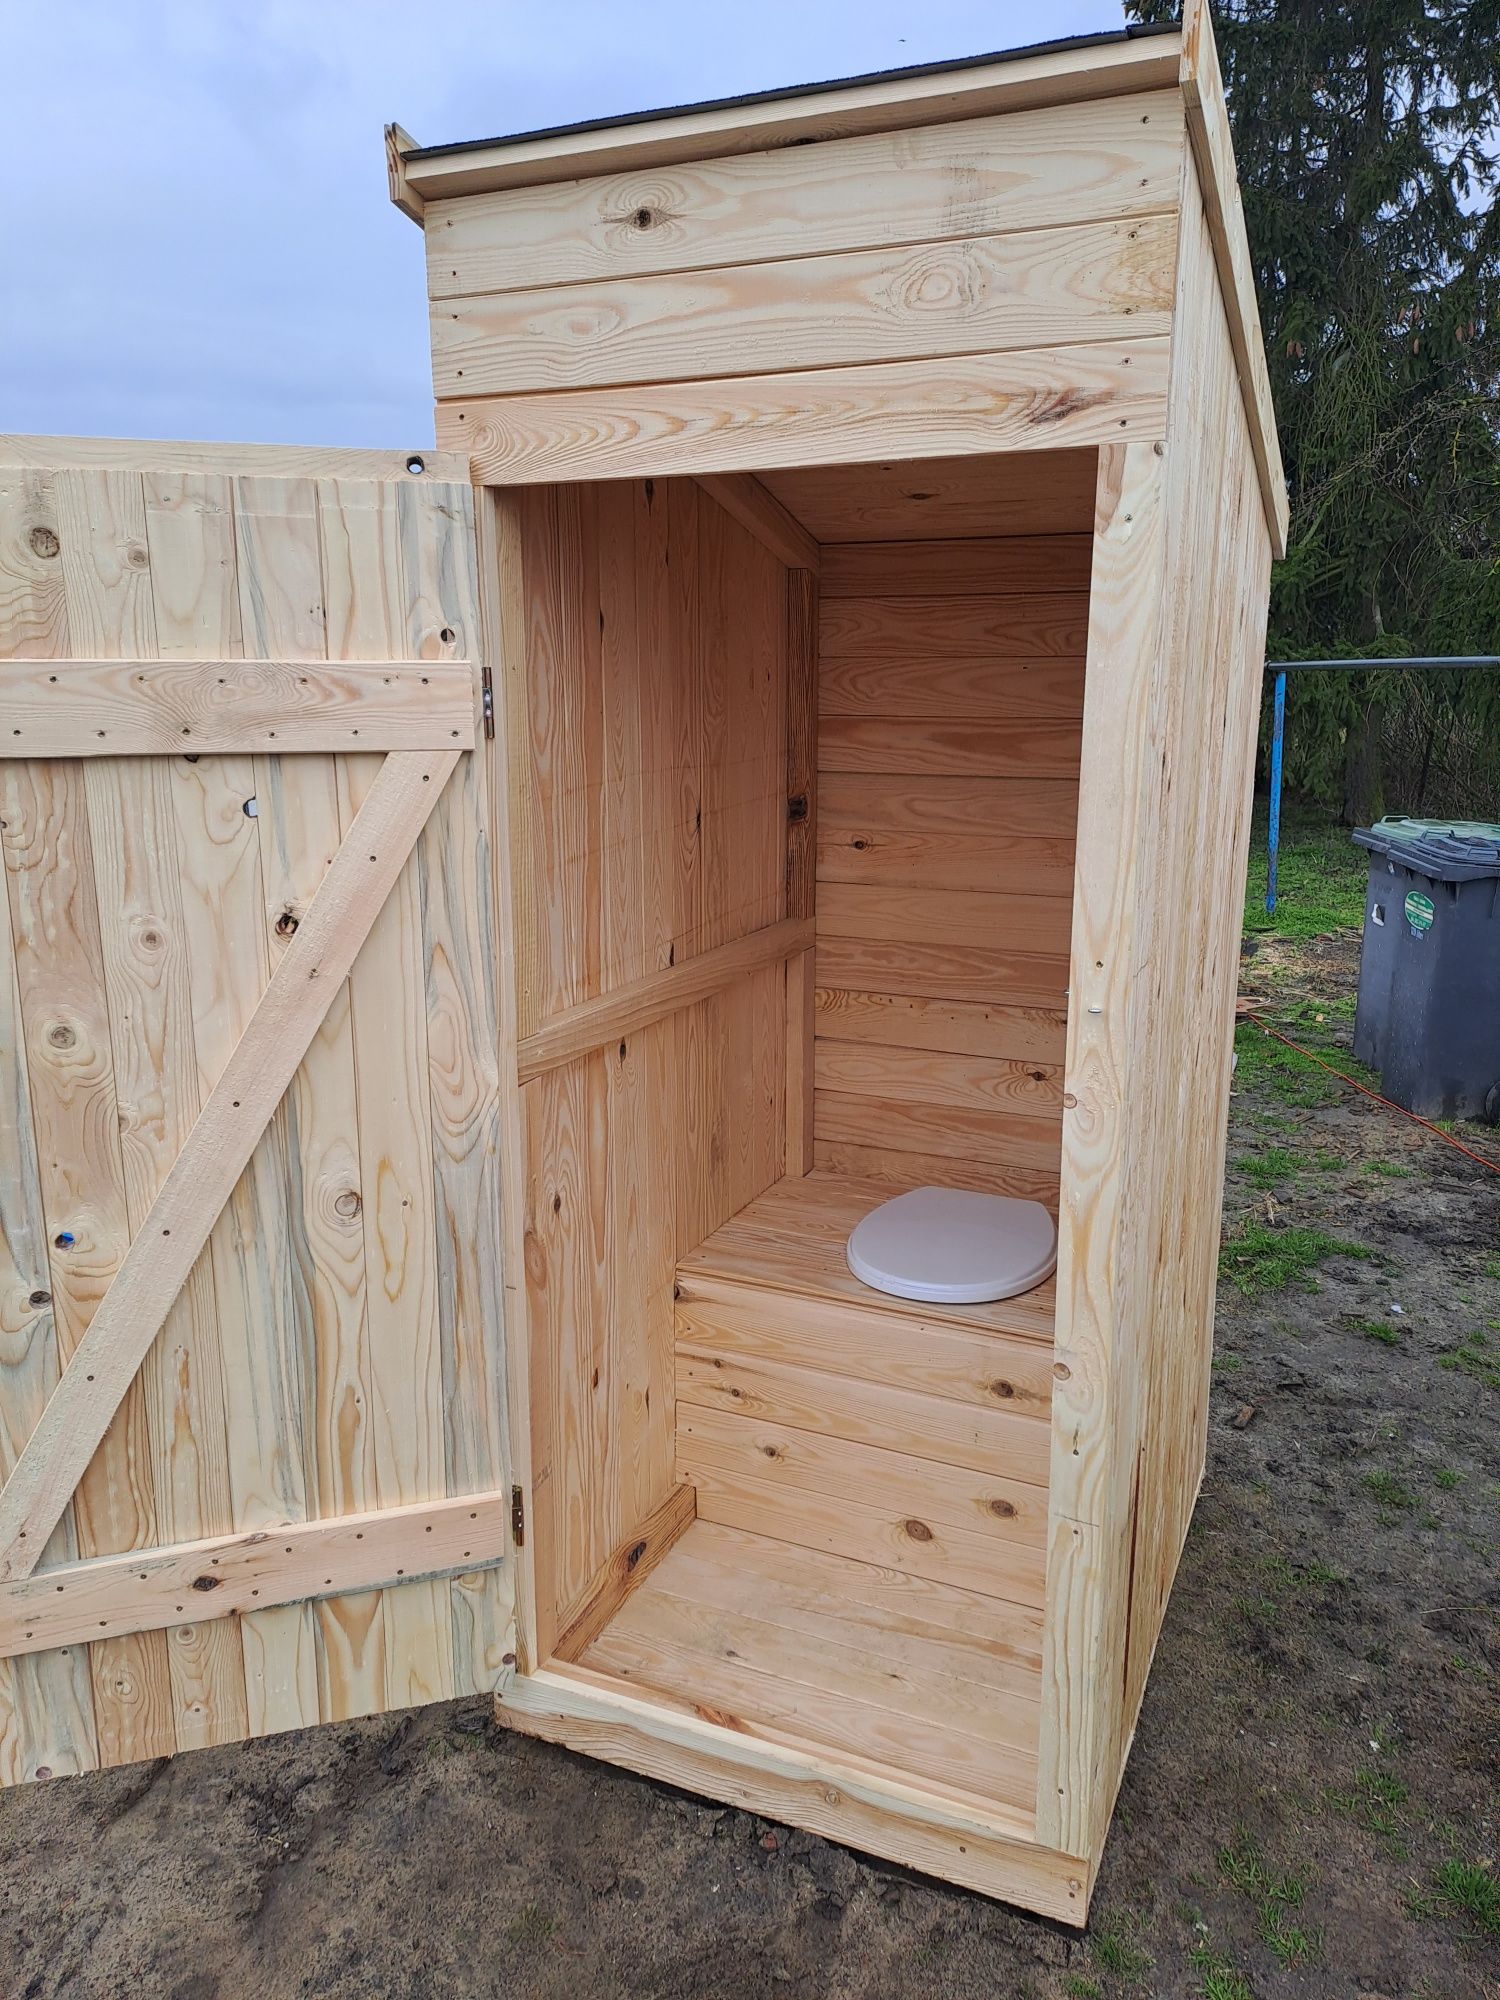 Wc, wychodek, toaleta drewniana